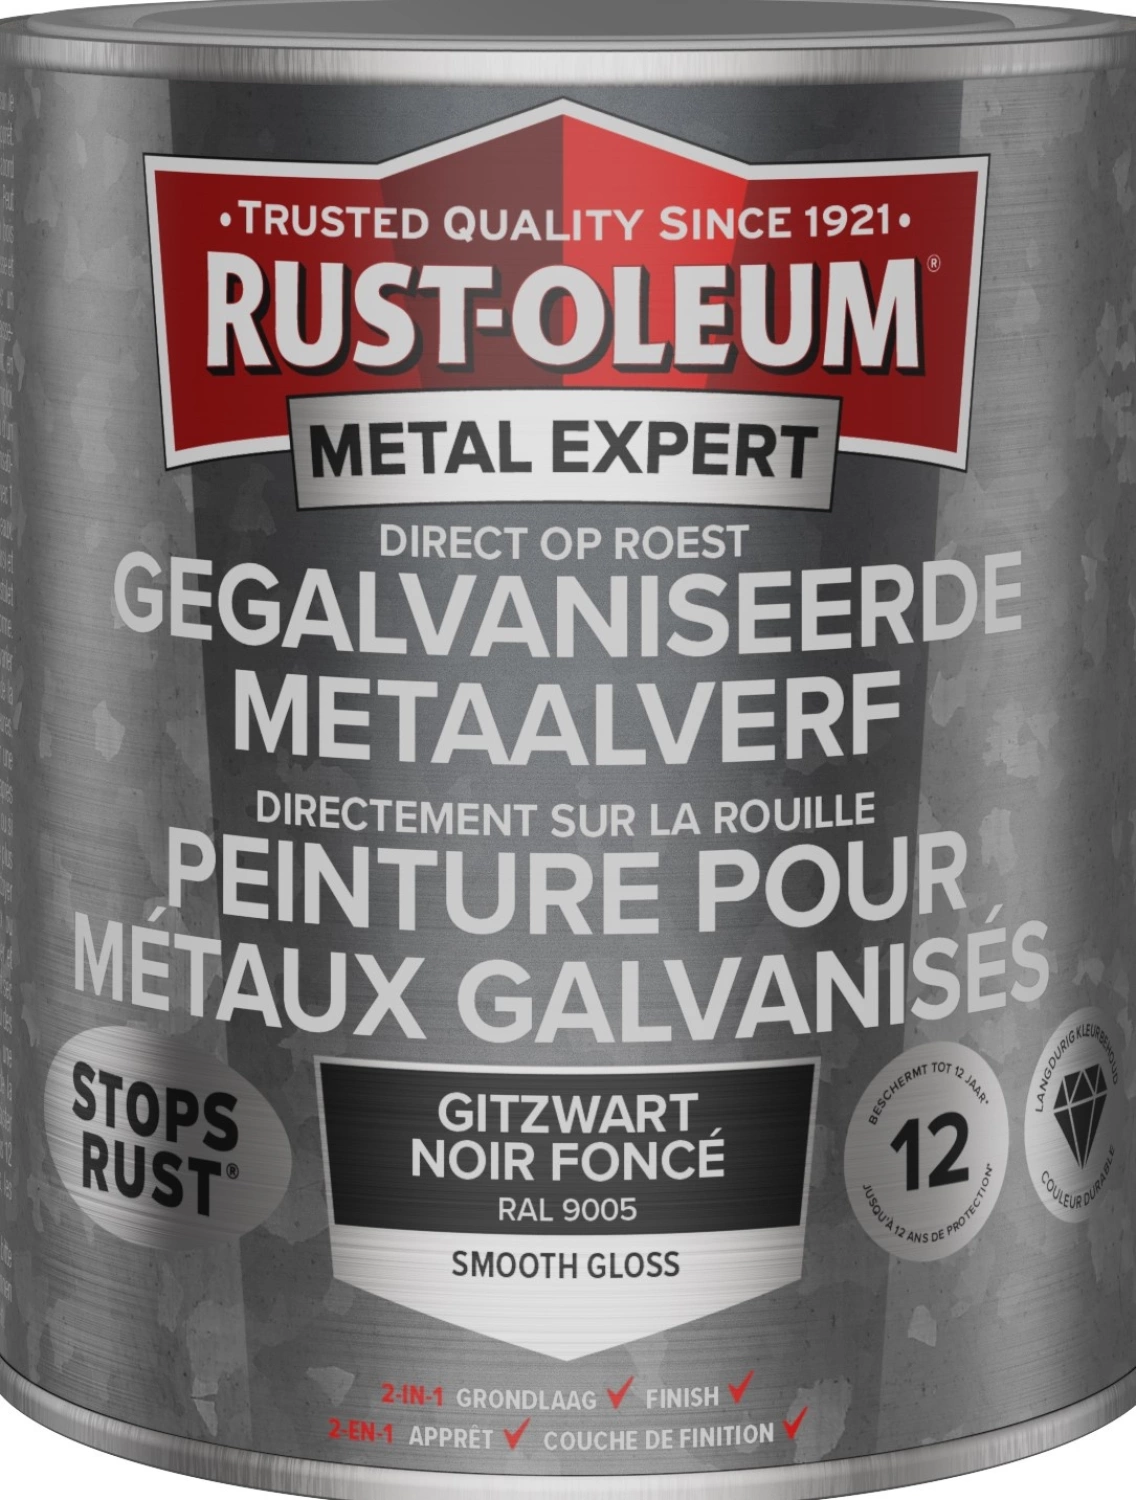 Rust-Oleum Gegalvaniseerde Metaalverf - RAL 9005 gitzwart - 0,75L-image